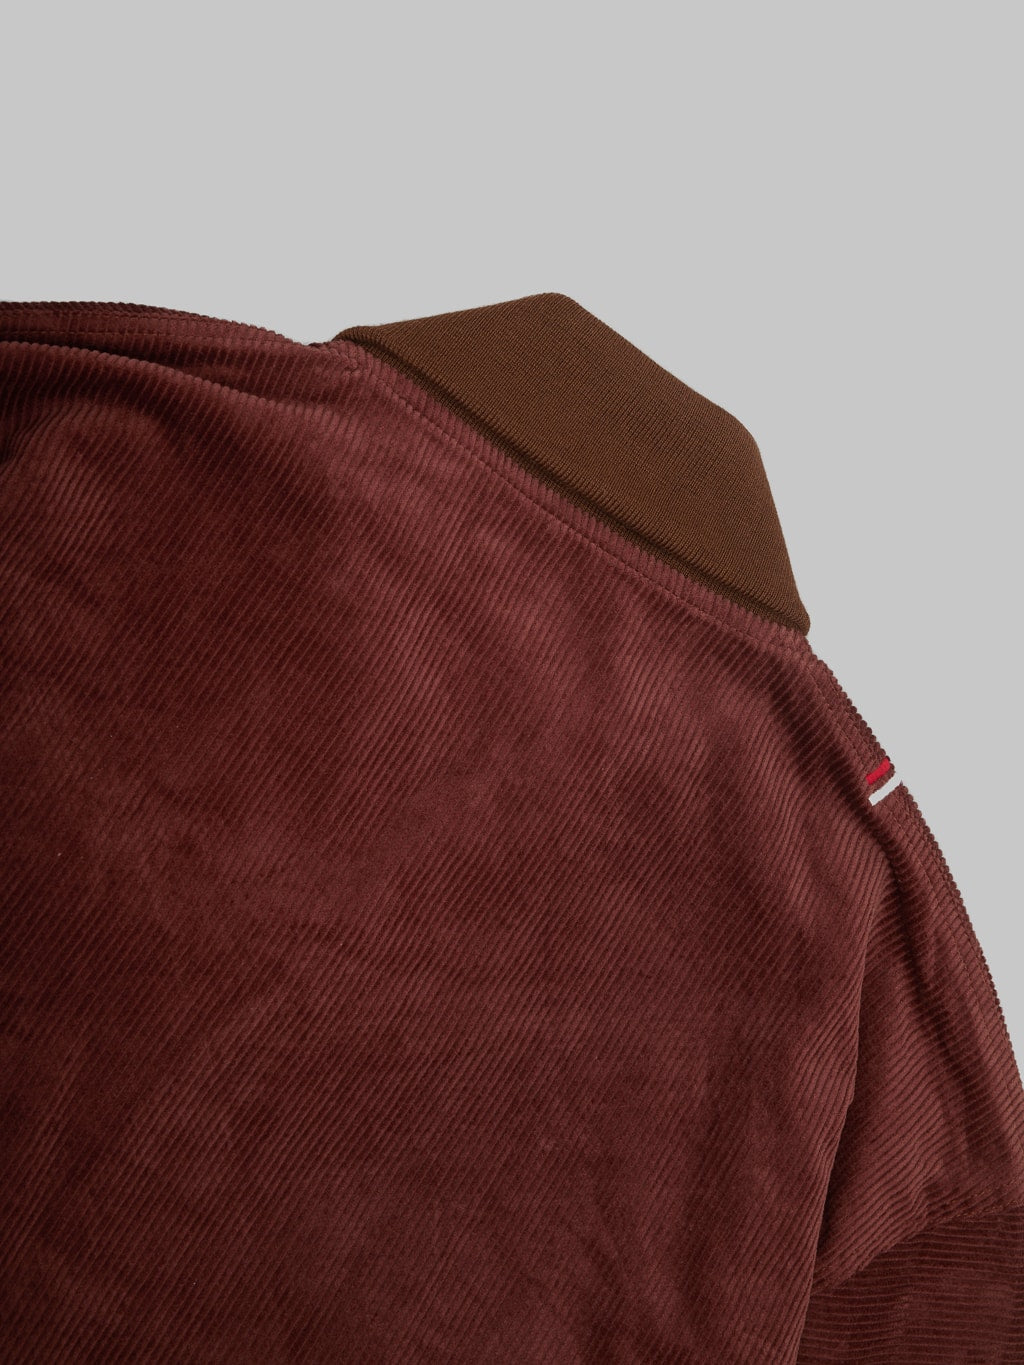 Tanuki Sazanami Corduro mud Dyed brown Jacket back collar details